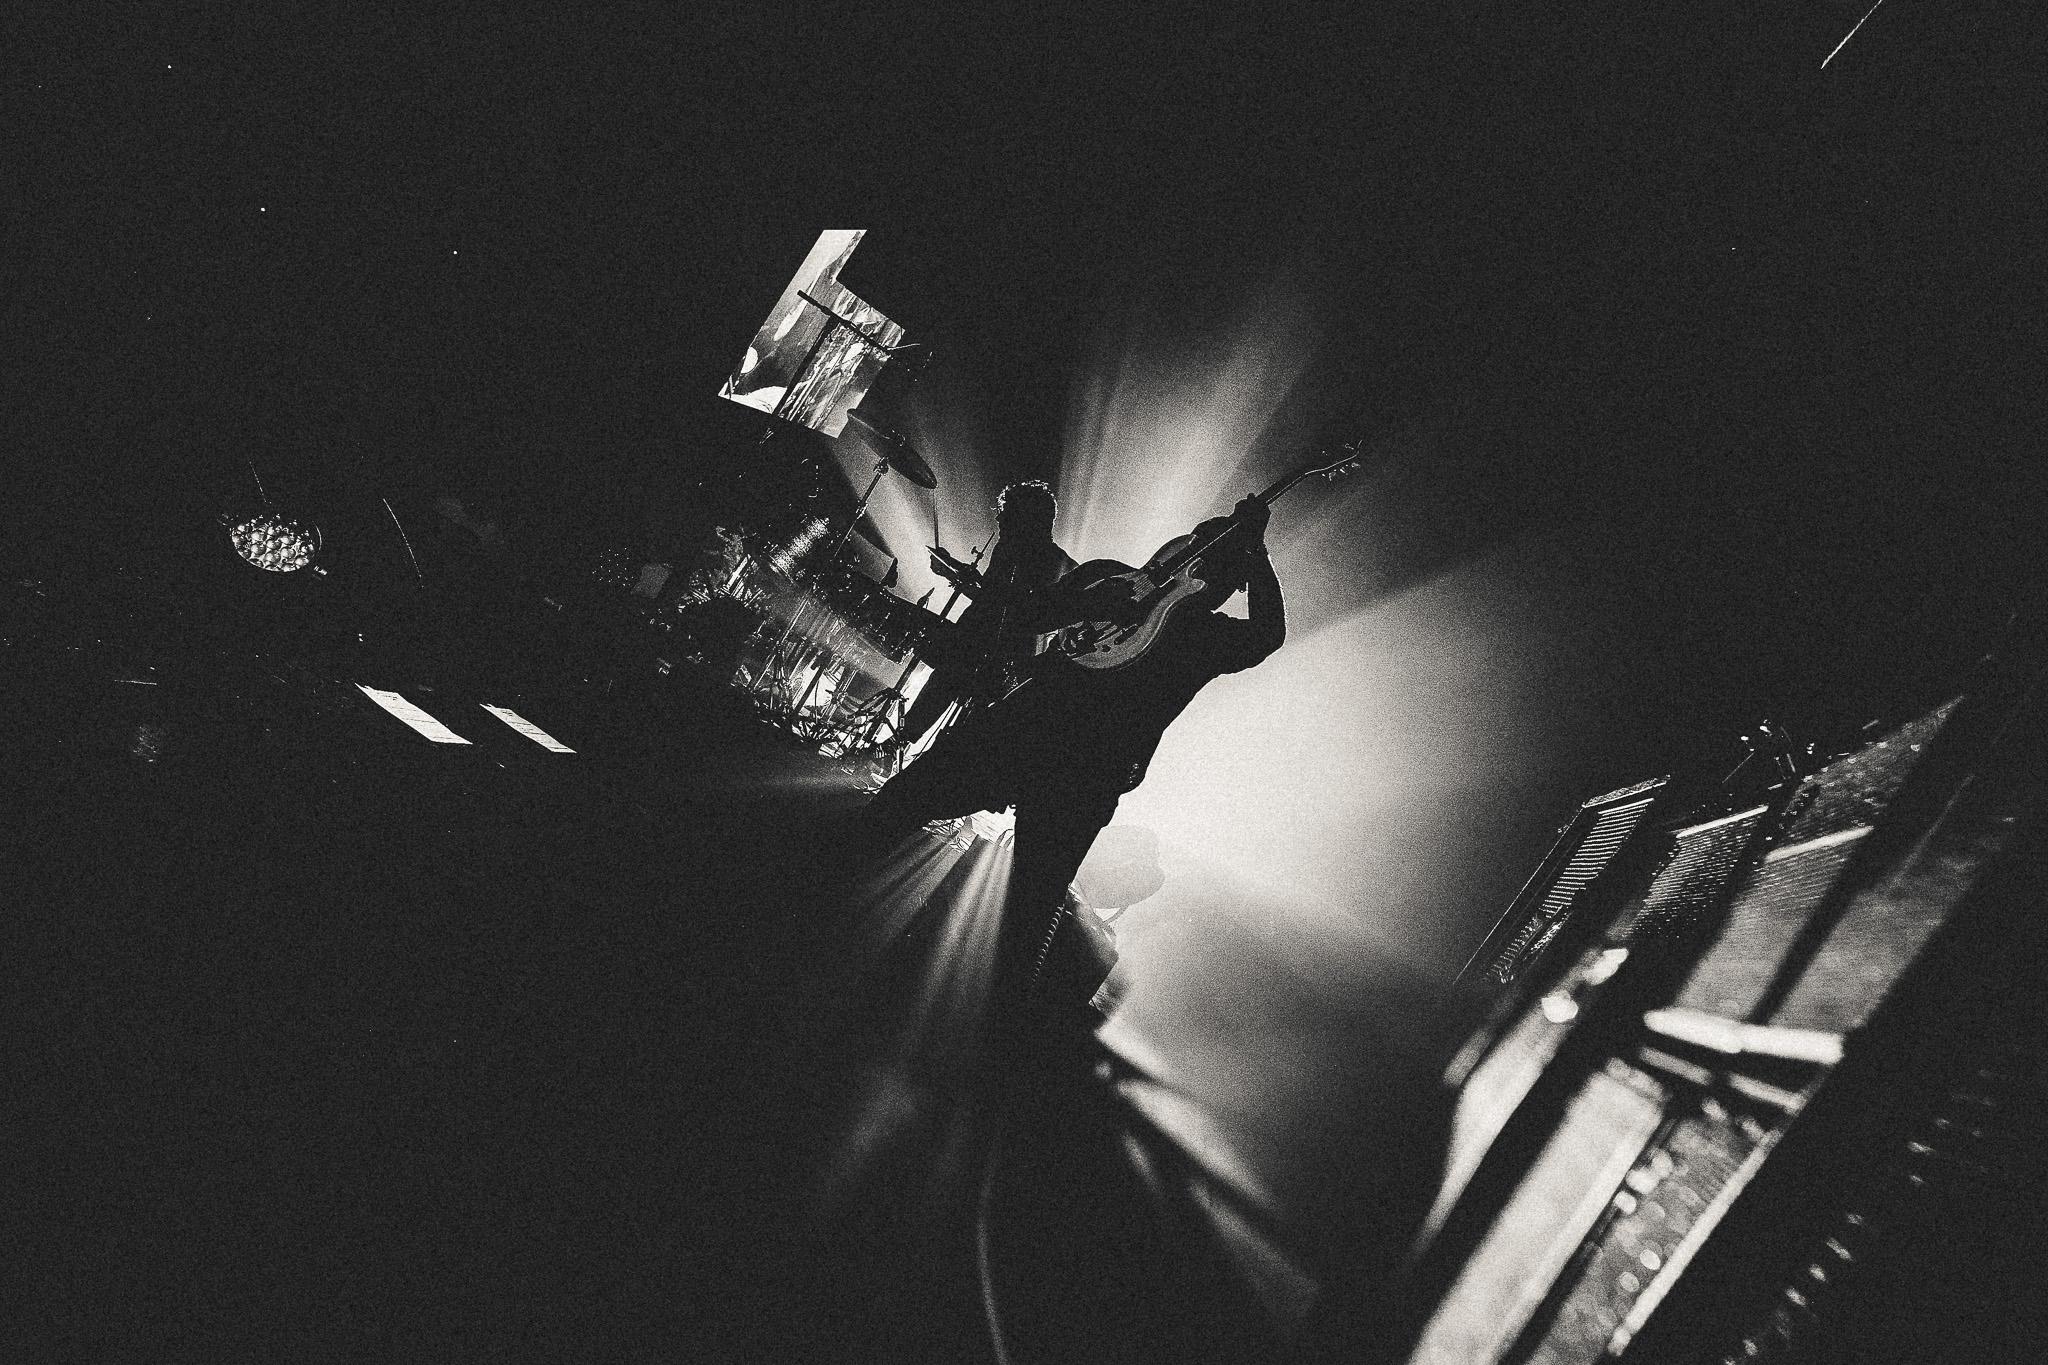 The Black Keys "Shadow" aufgenommen in Tel Aviv Israel 2023, signierte Abzüge in limitierter Auflage vom offiziellen The Black Keys Fotografen Larry Niehues. 

Die Beziehung zwischen den Black Keys und Larry Niehues begann durch die gemeinsame Liebe